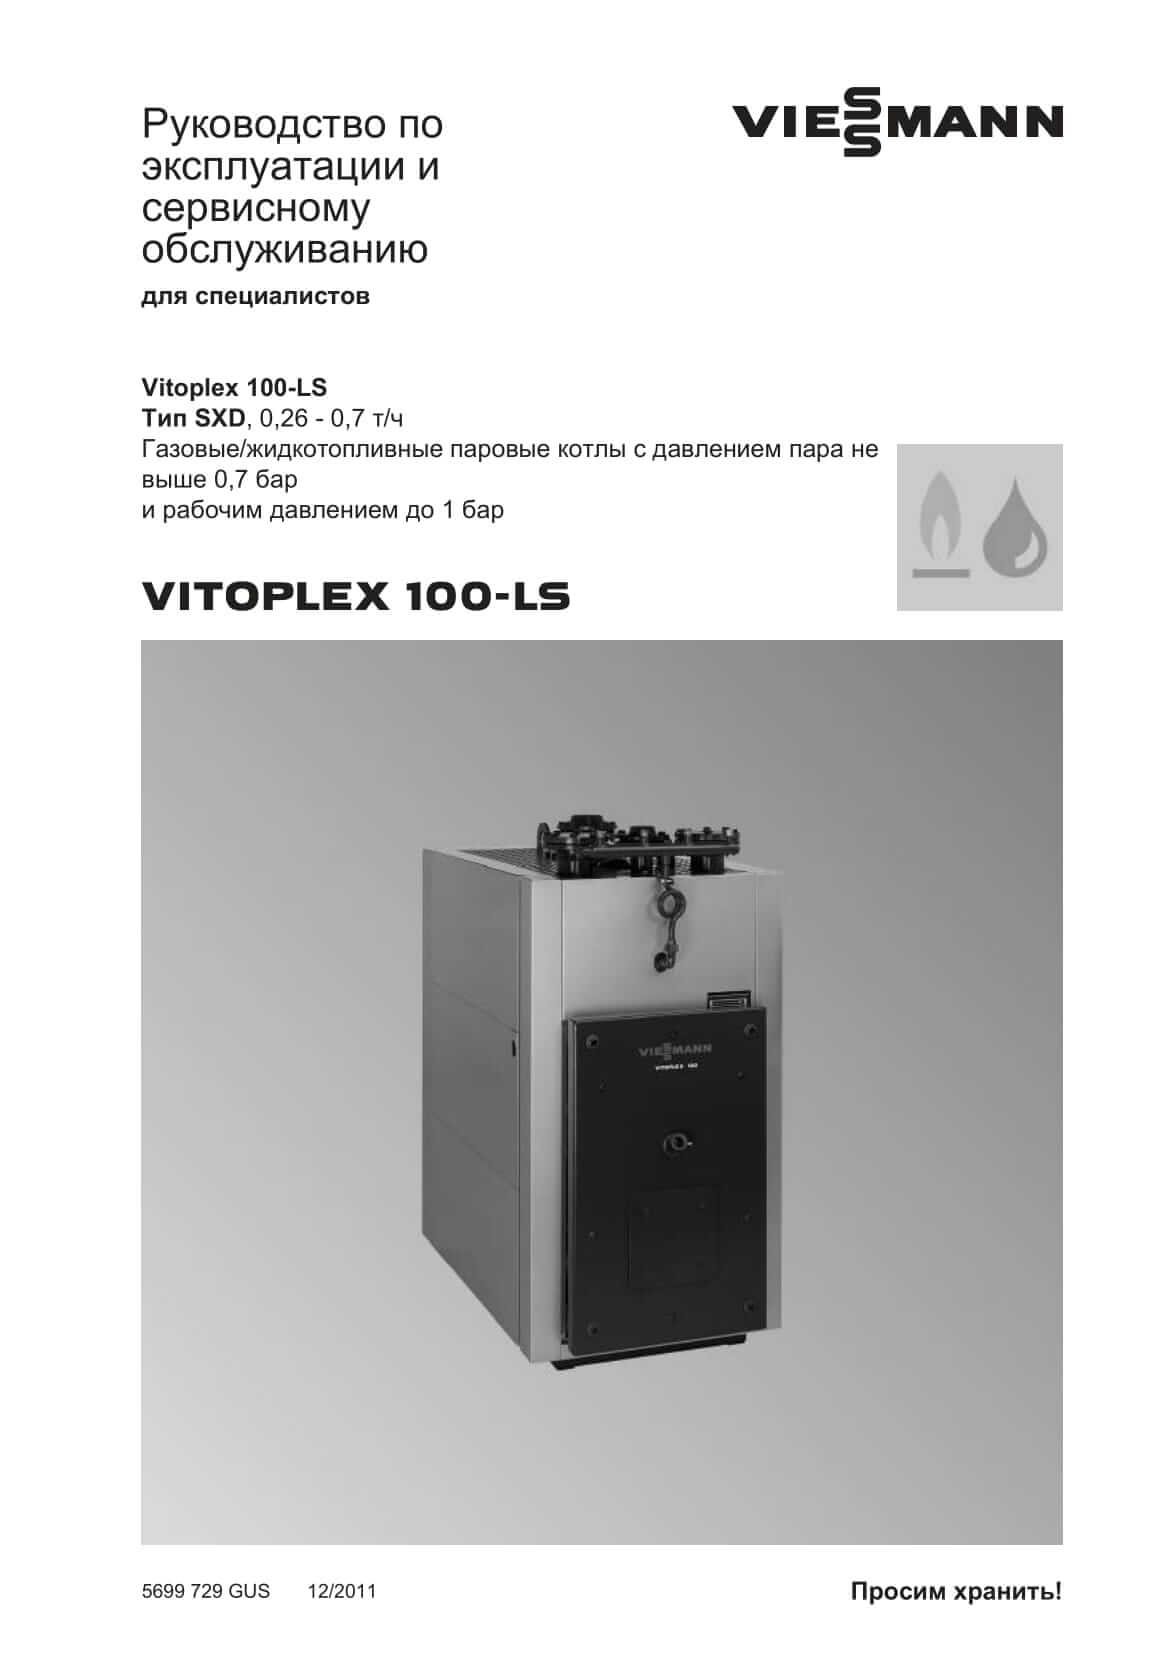 Фотография Руководство по эксплуатации и сервисному обслуживанию для комбинированного котла дизель/газ Vitoplex 100-LS 0,26 - 0,7 т/ч